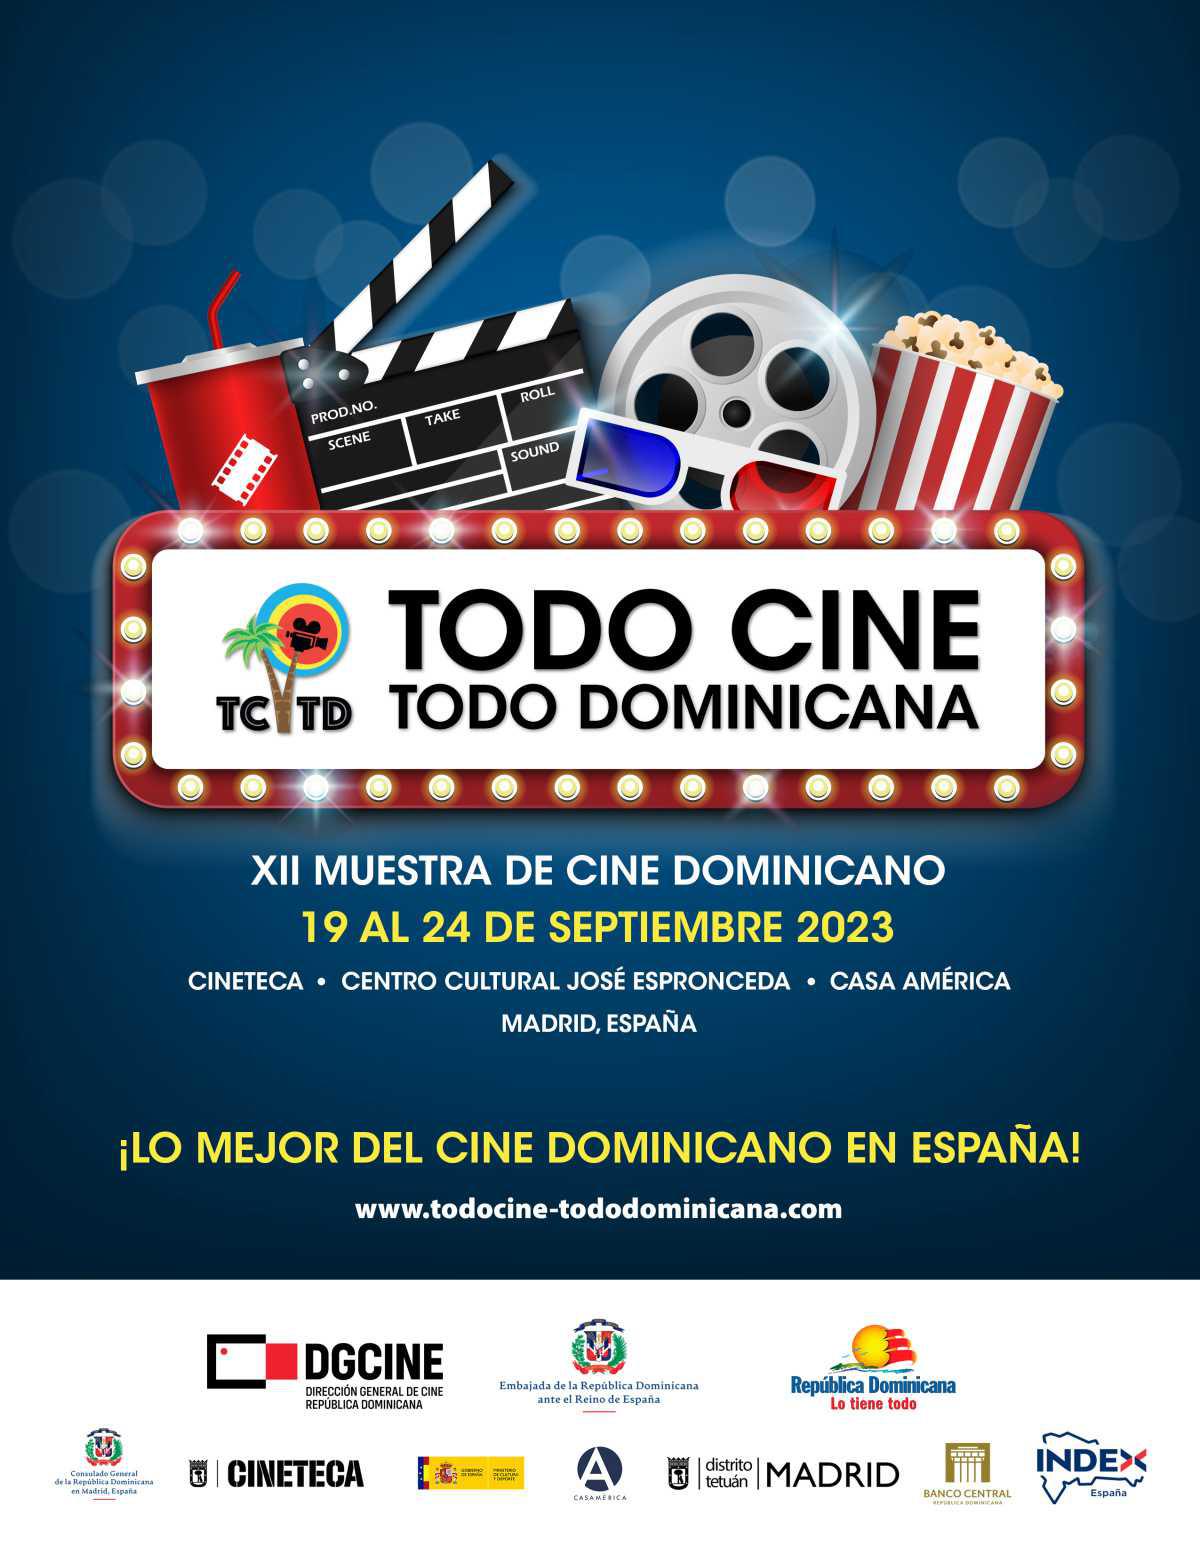 La embajada de República Dominicana en España organiza la XII edición de la muestra de cine dominicano.